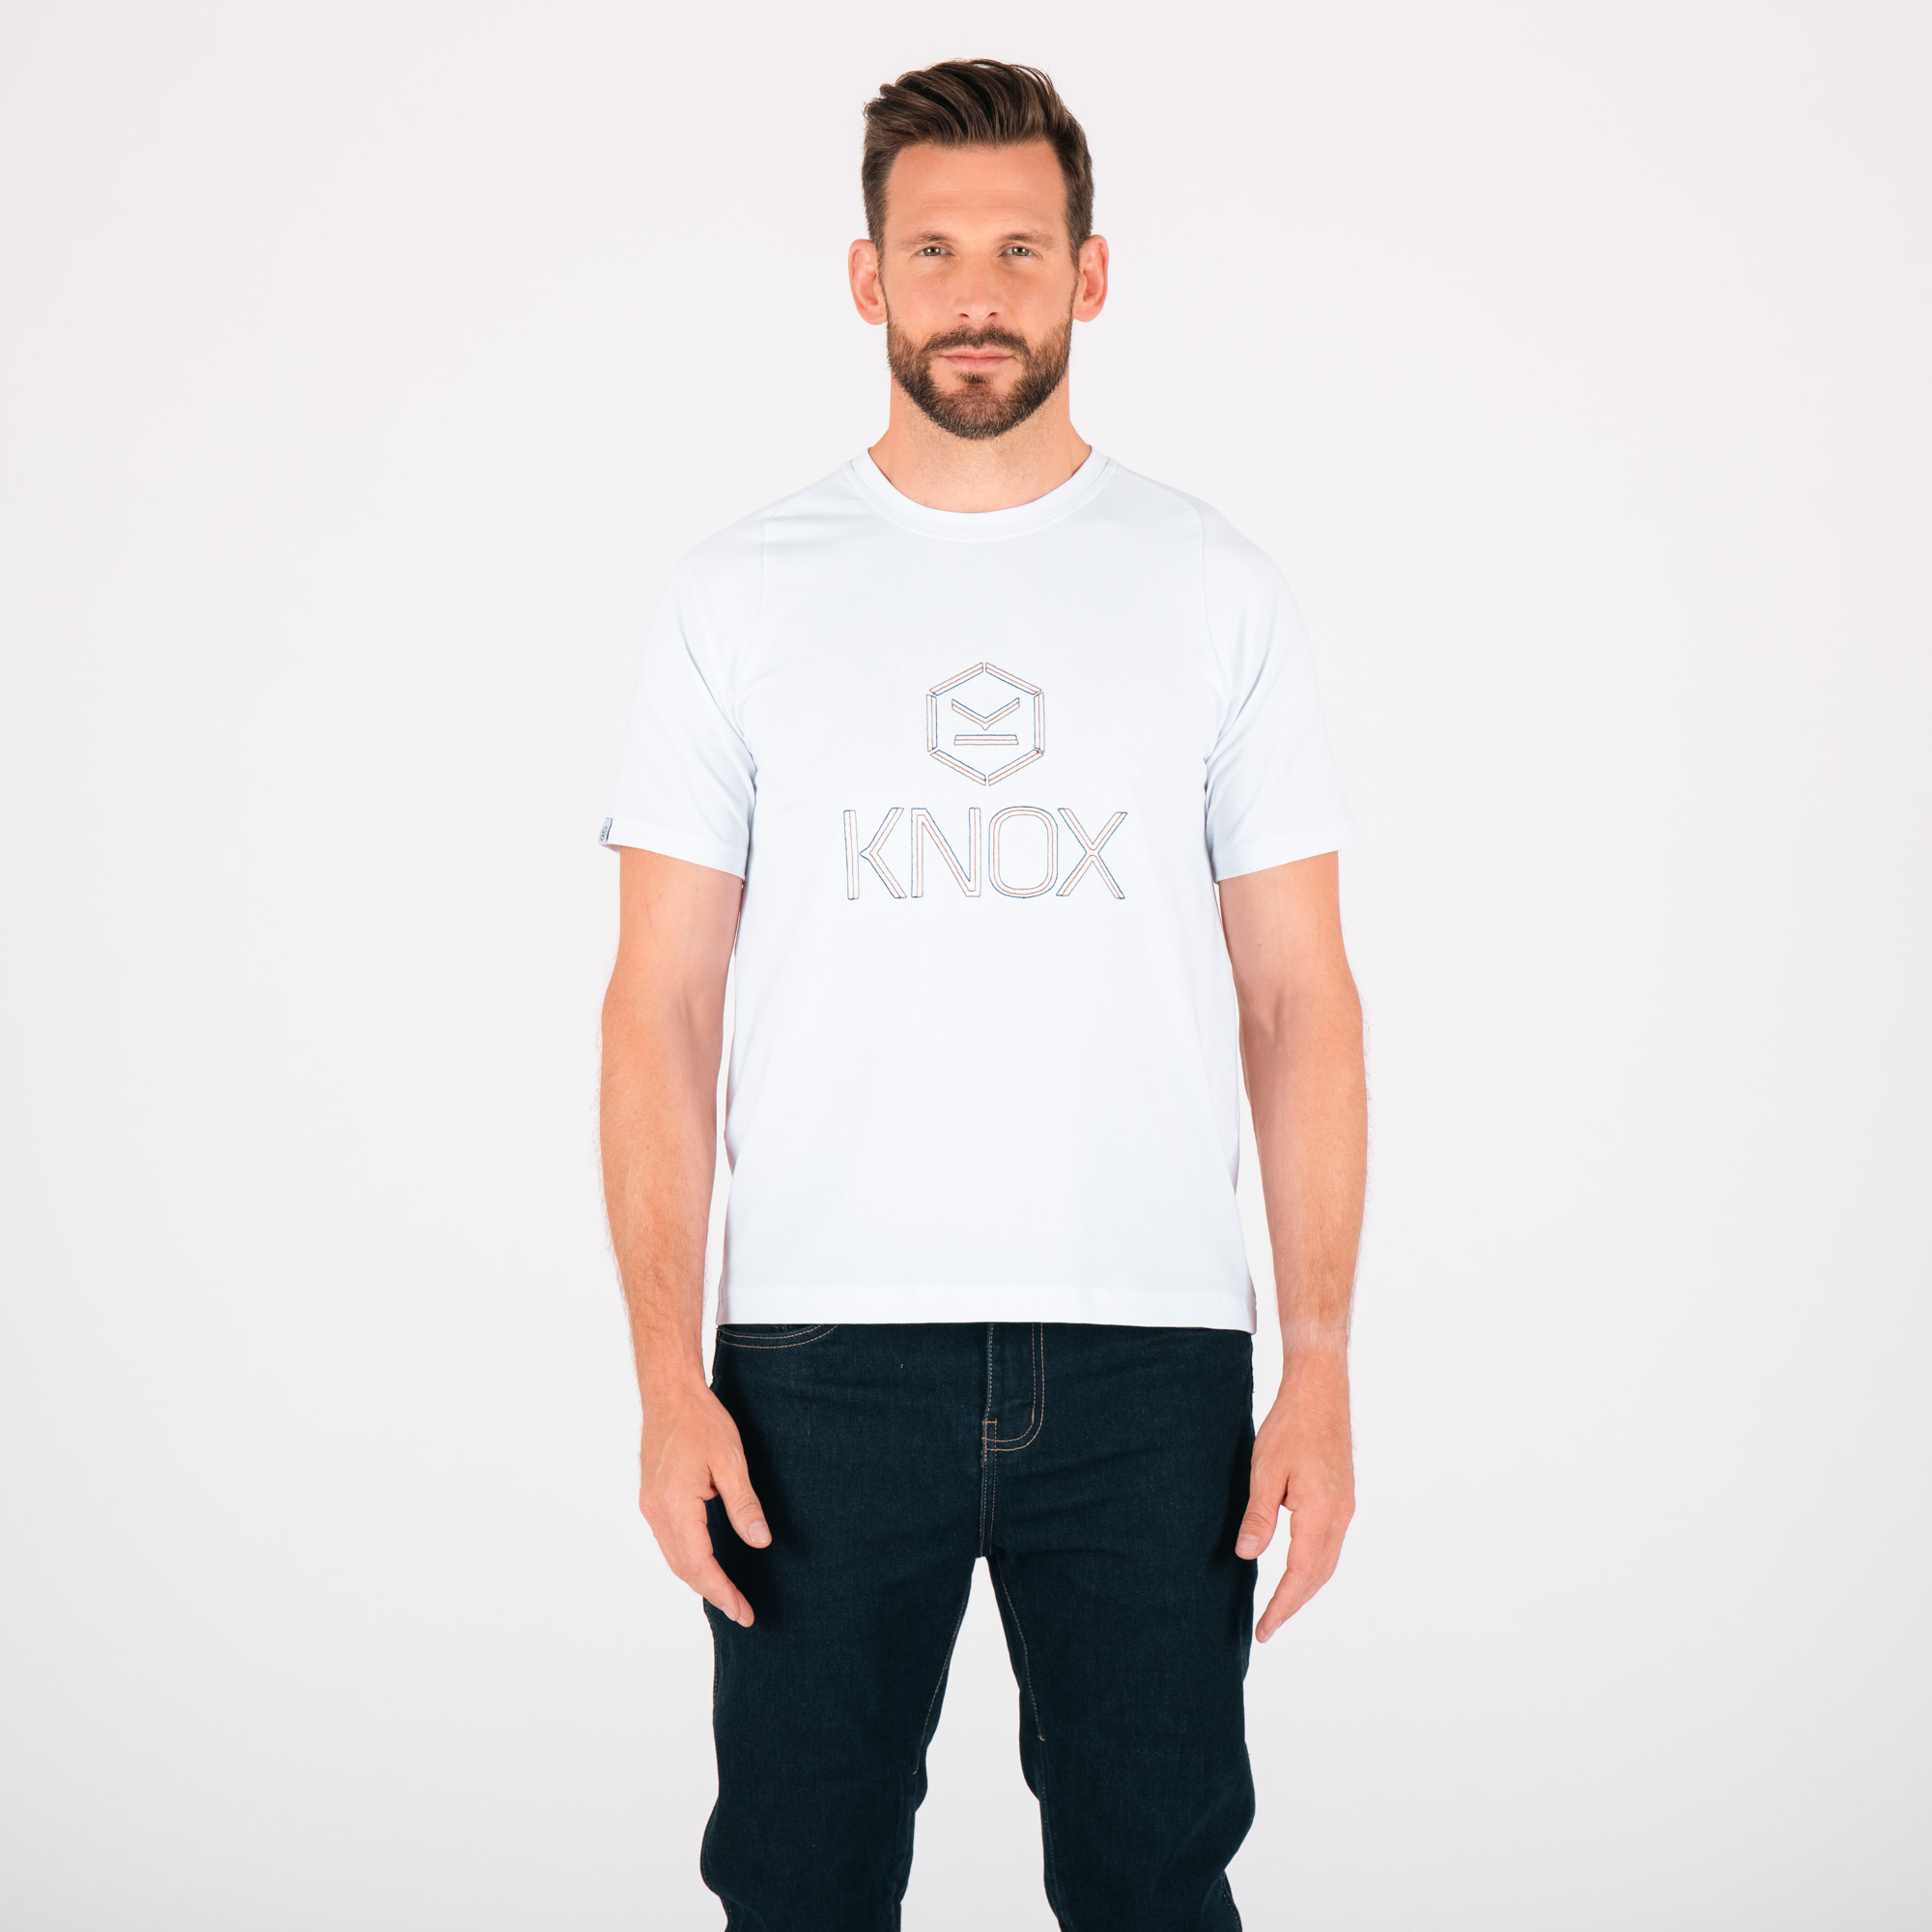 Knox Online - Knox